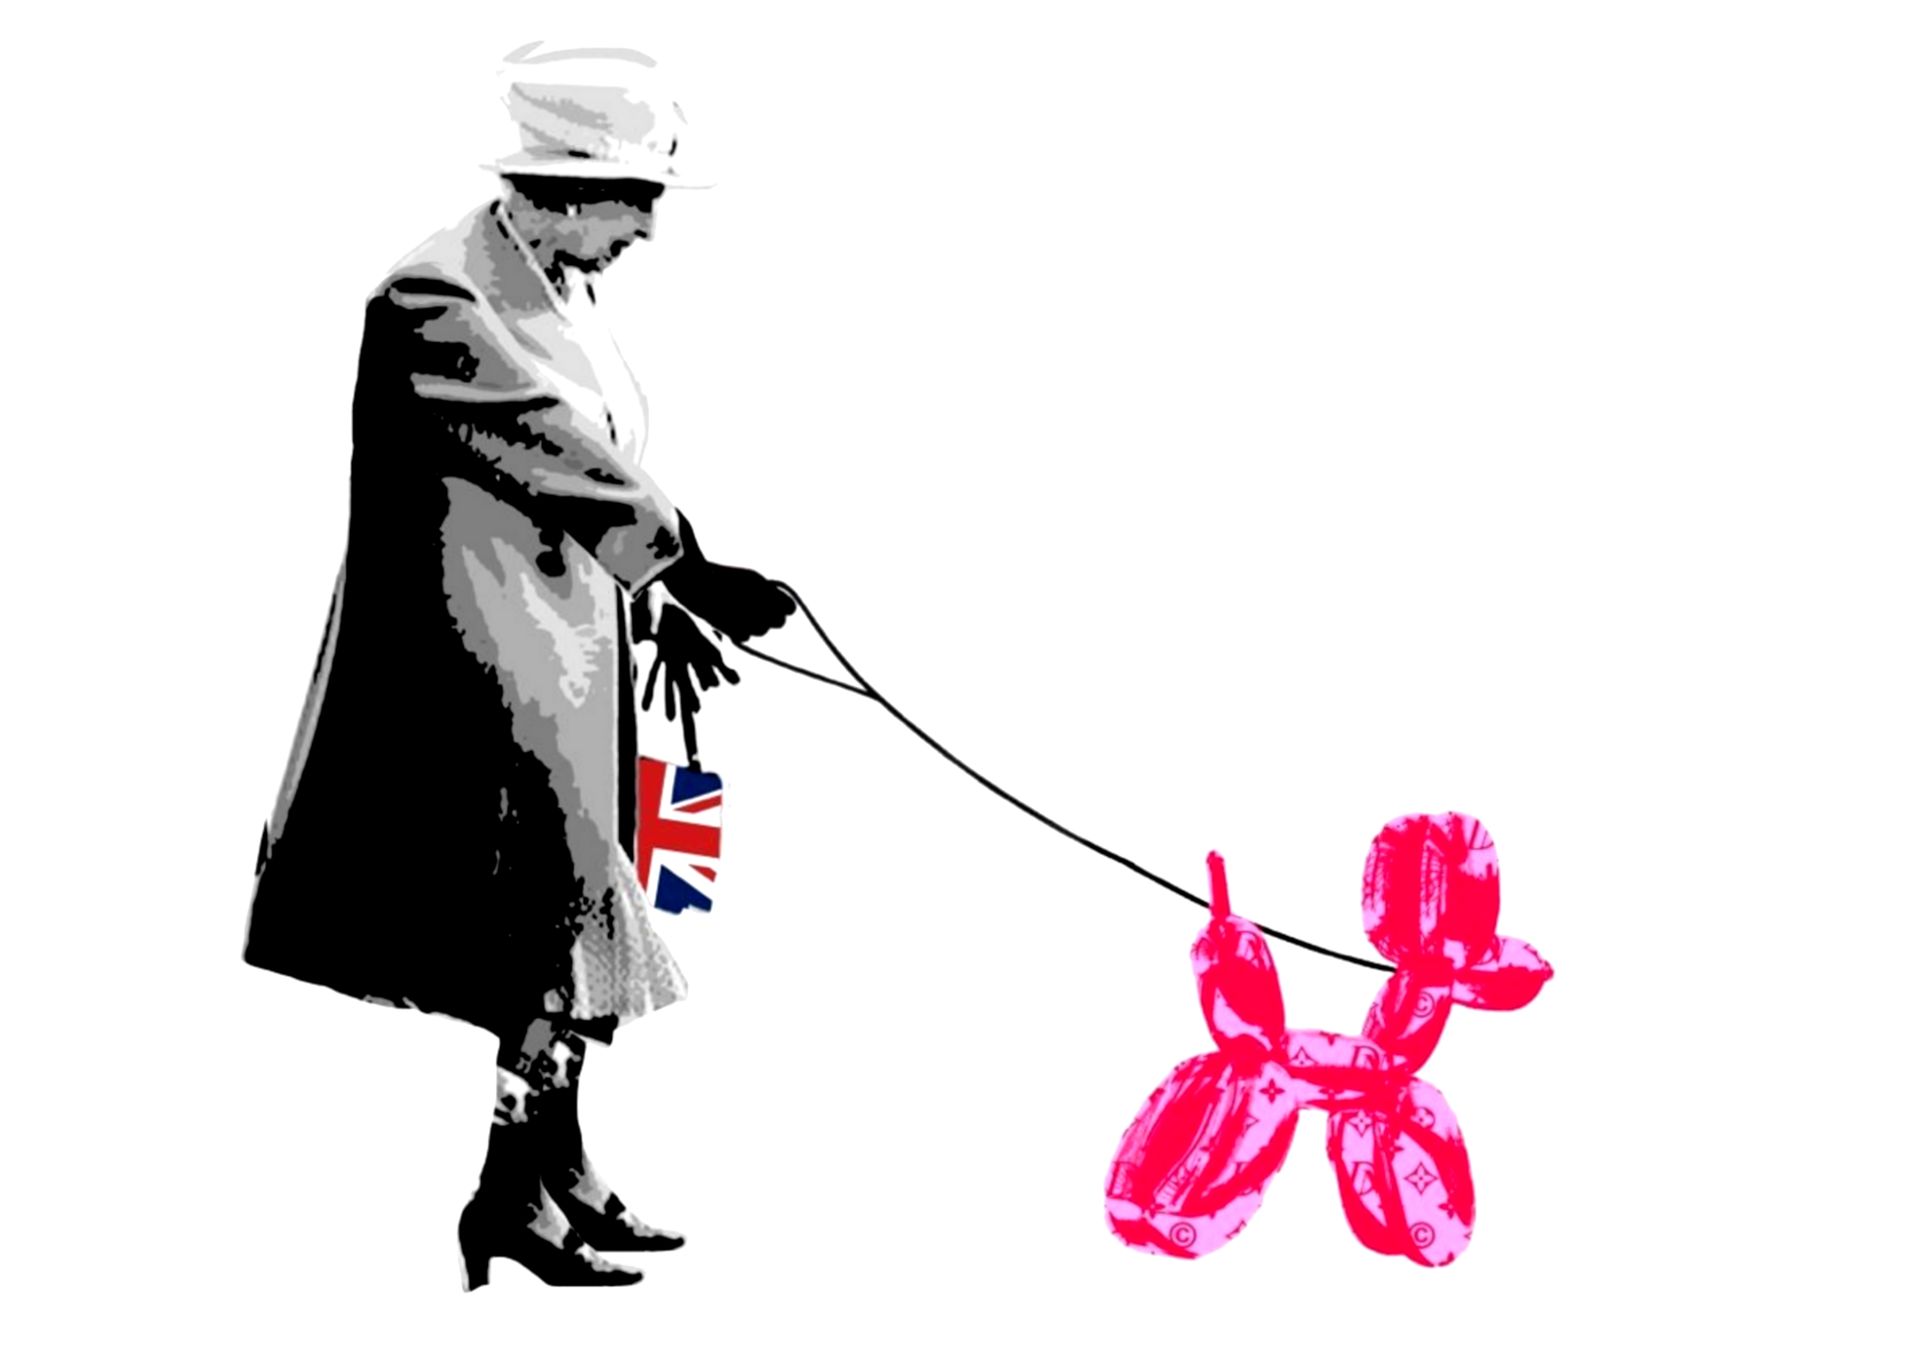 Death NYC 纽约市的死亡

女王狗流行粉红色，2015年

丝网印刷。

限量发行100张印刷品。

尺寸：45 x 32 cm - 艺术纸300g

&hellip;